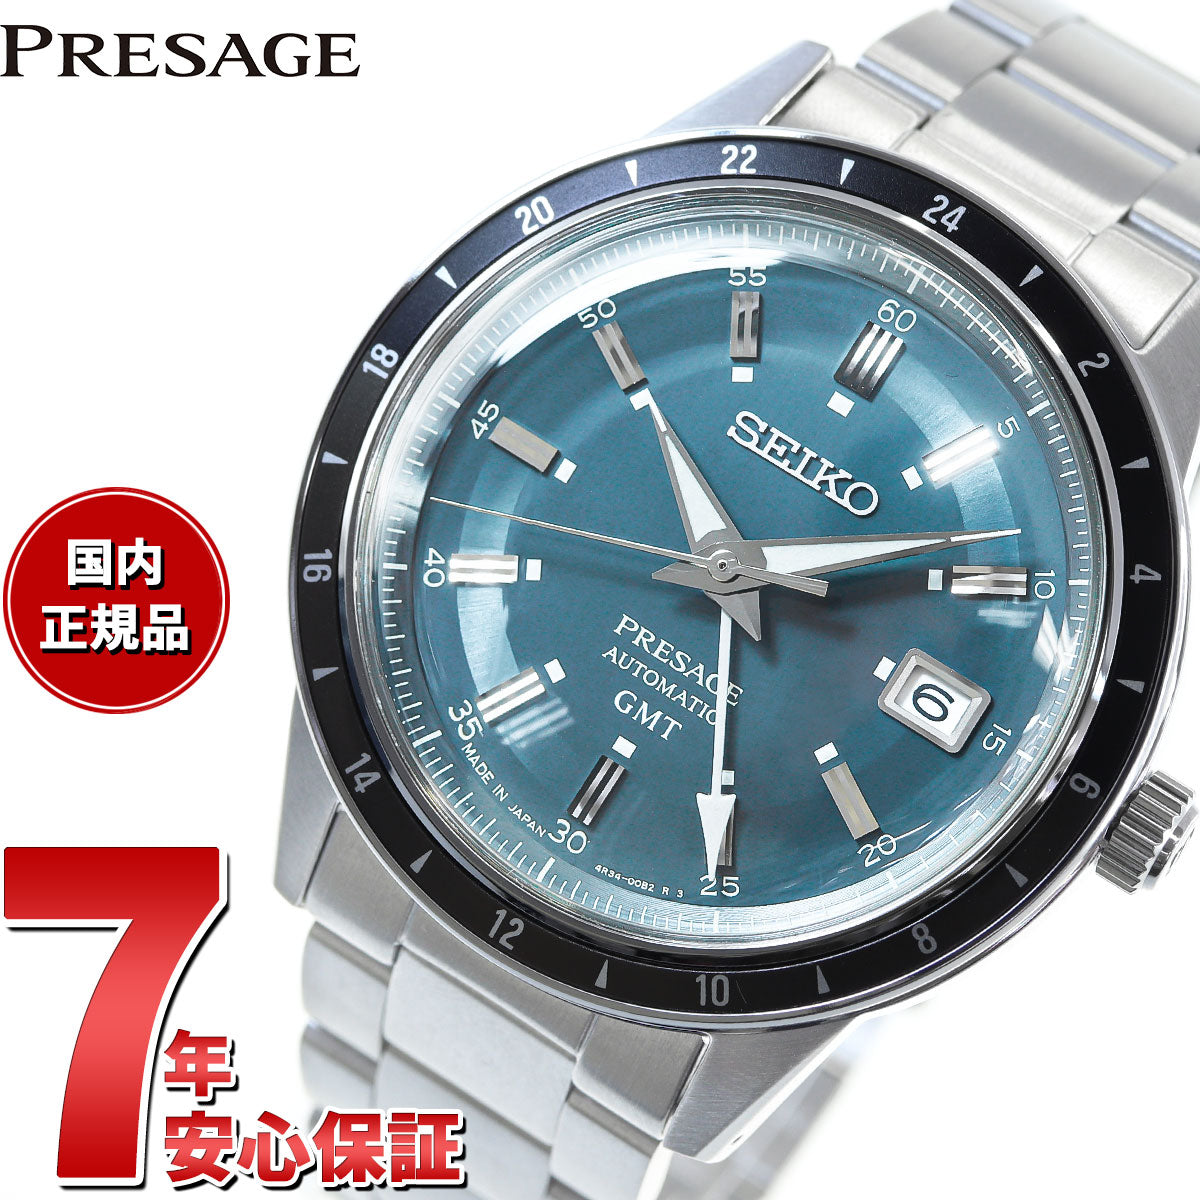 セイコー プレザージュ SEIKO PRESAGE 自動巻き メカニカル 腕時計 メンズ ベーシックライン SARY229 Style60's GMTモデル Journey on the road